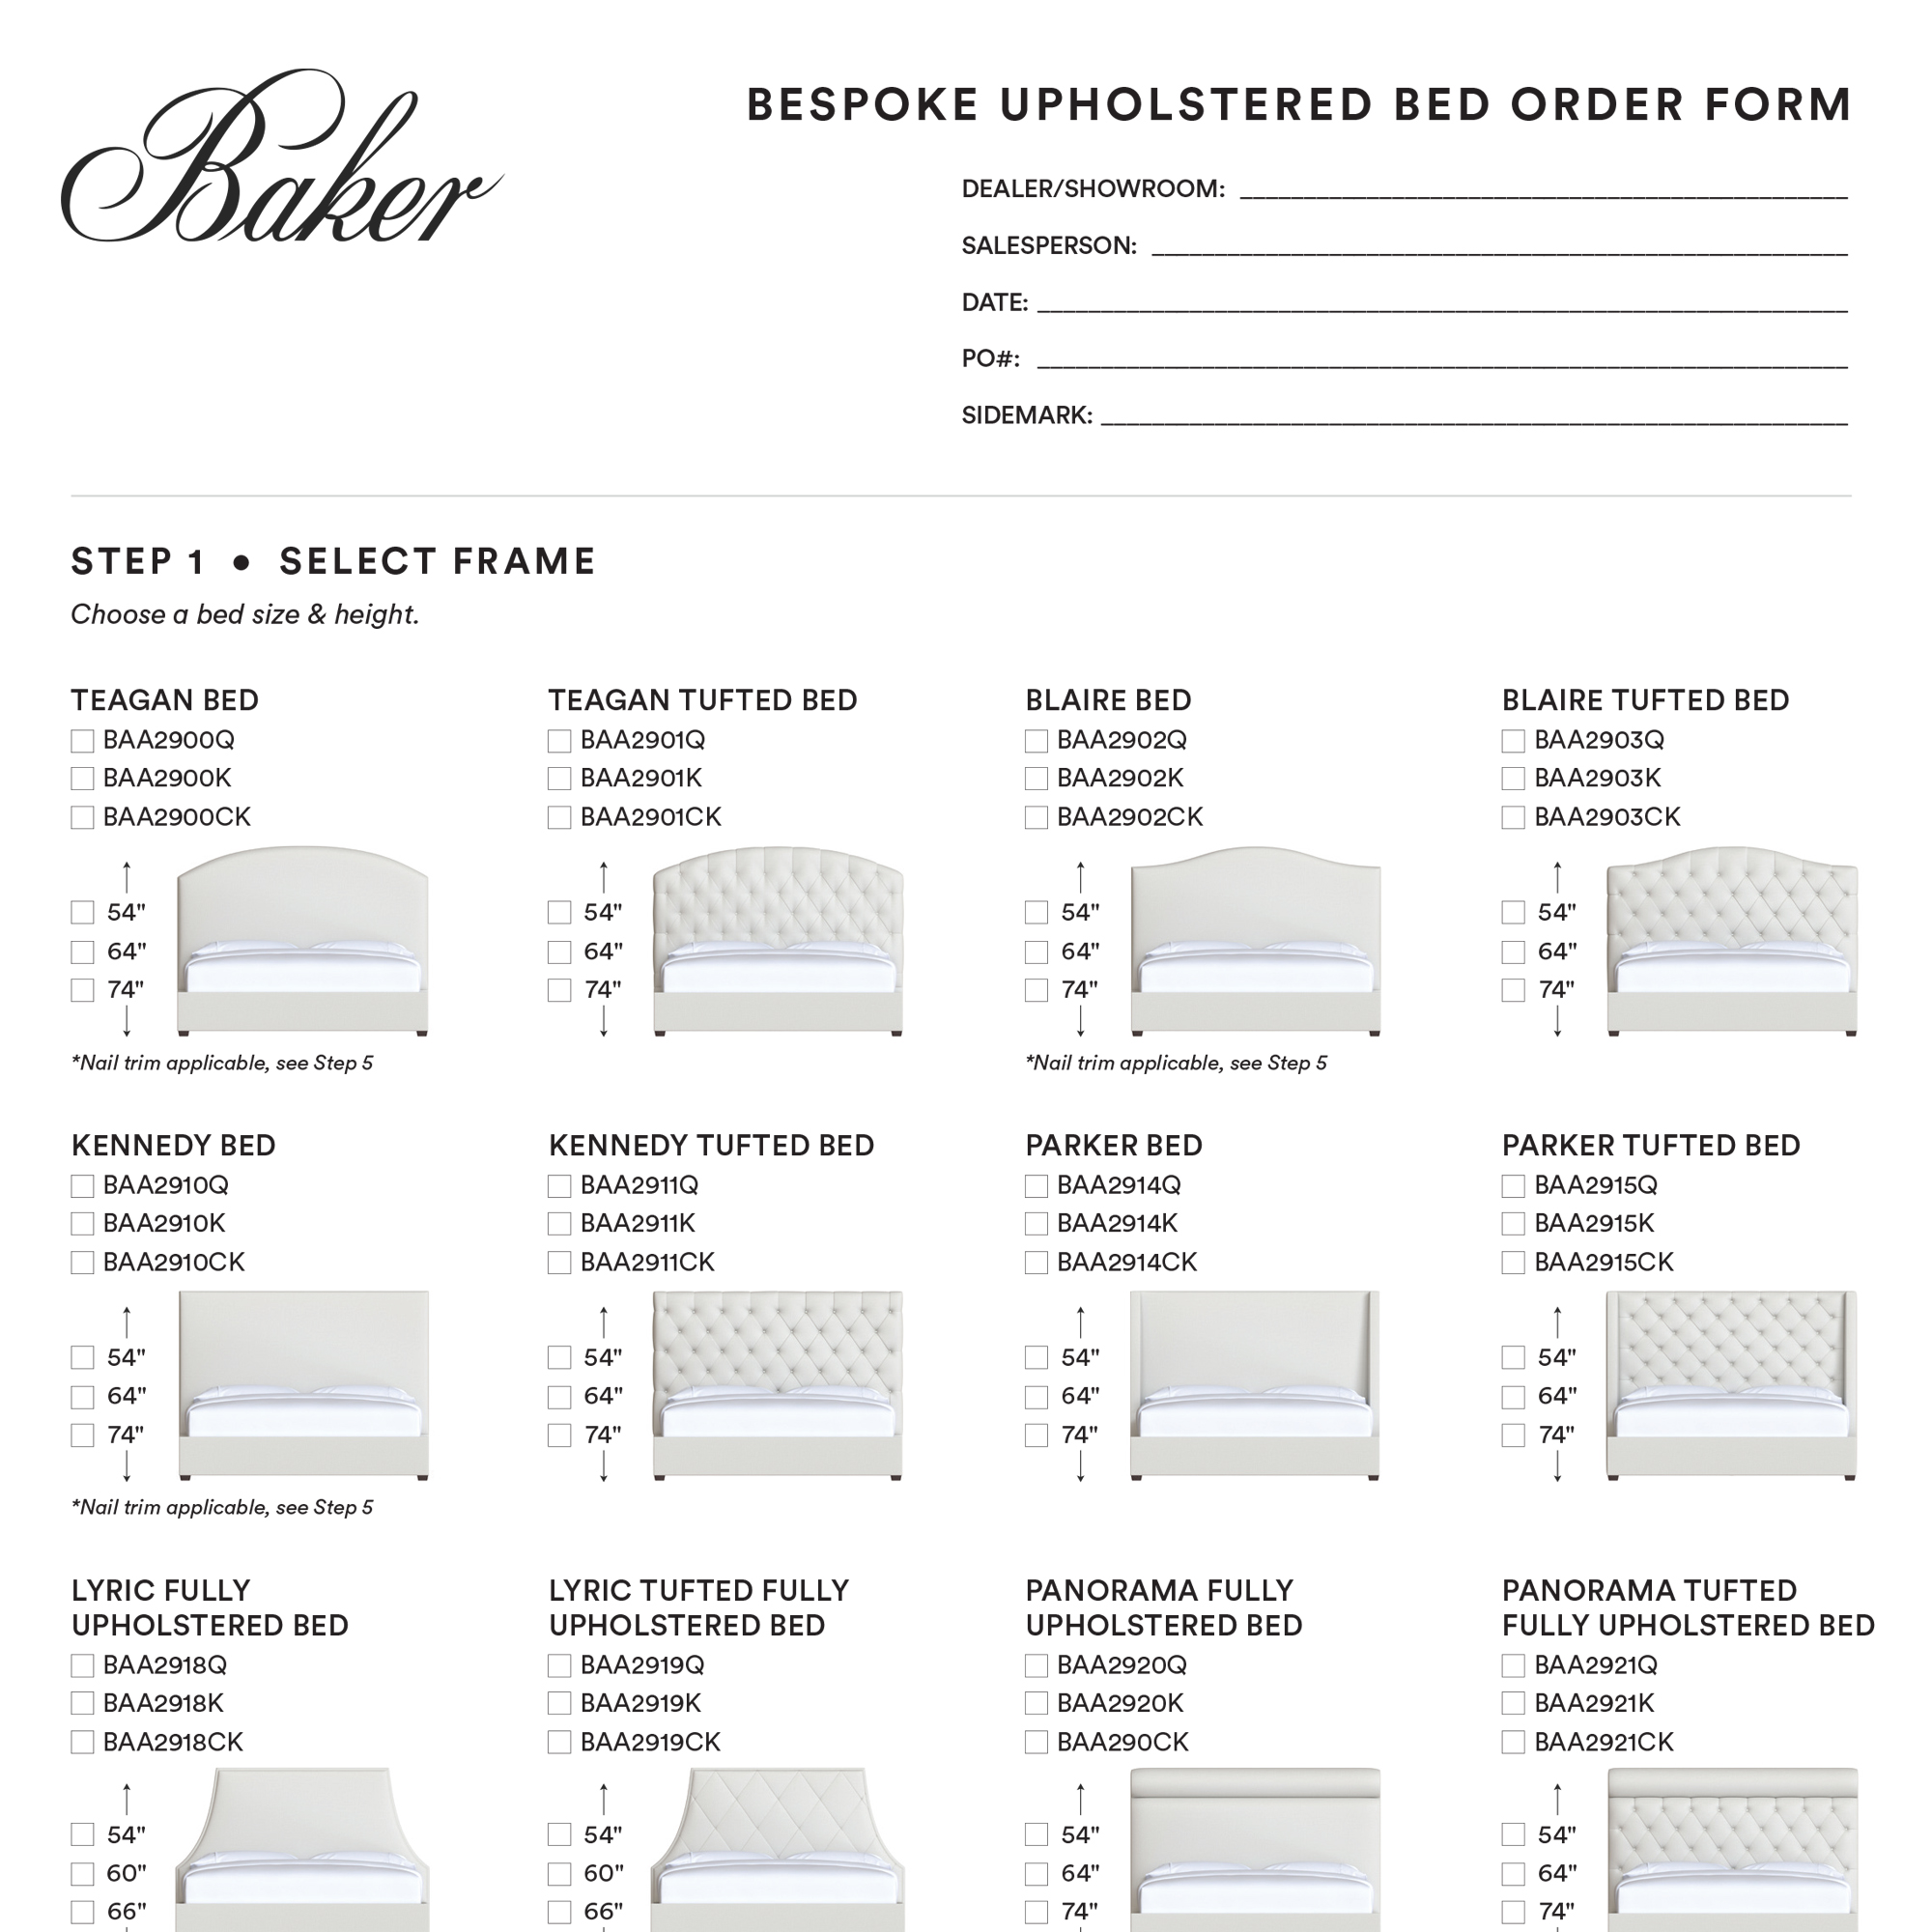 Bespoke Upholstered Beds Order Form